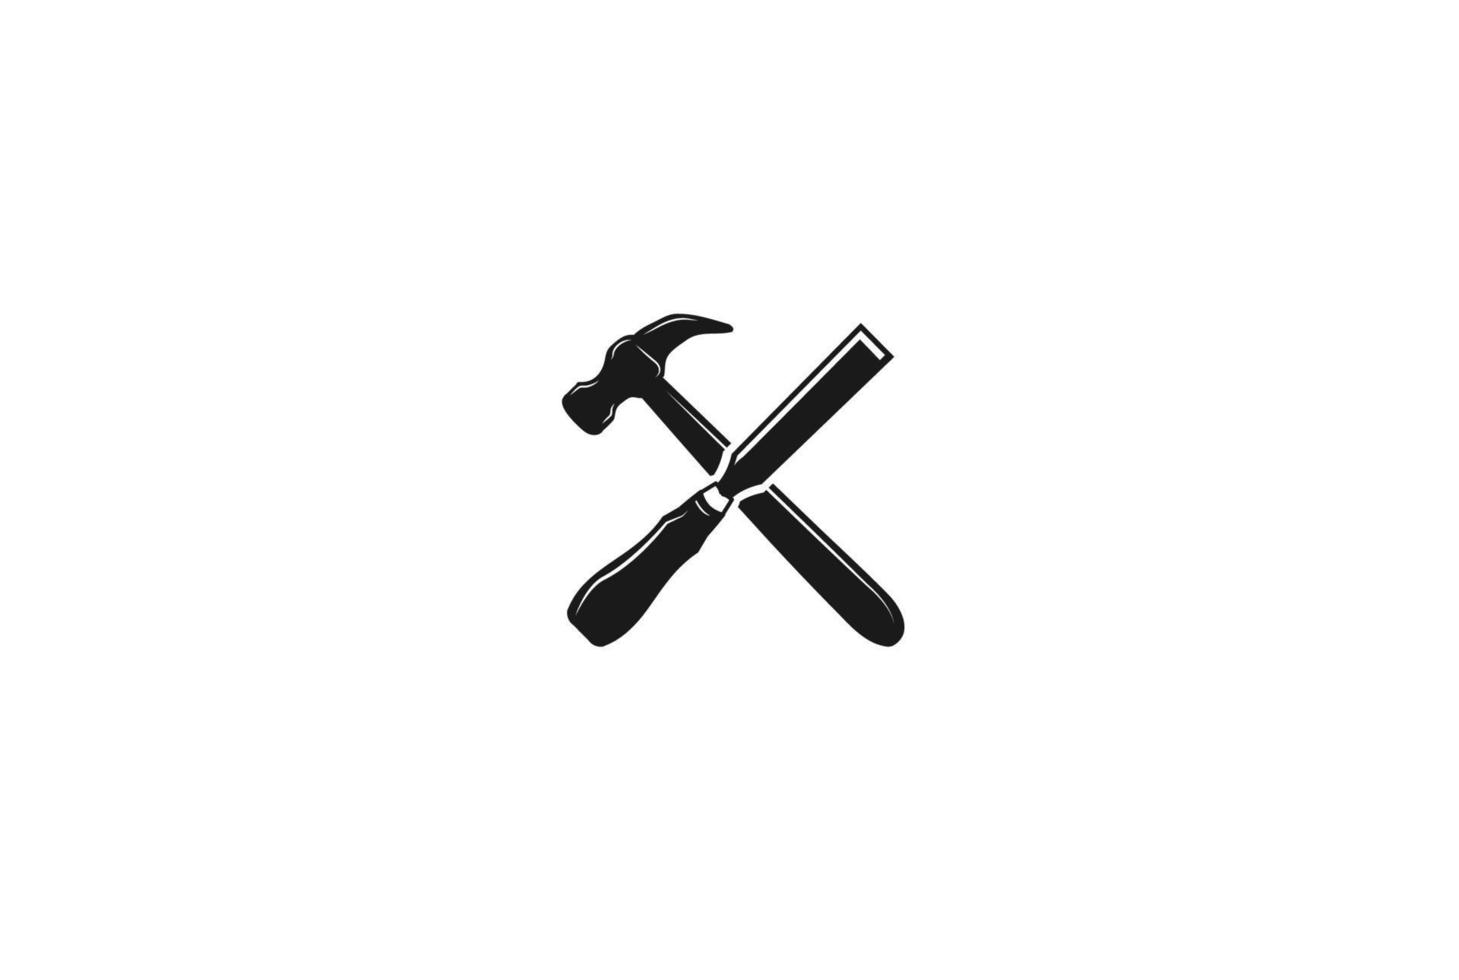 Martillo y cincel cruzados rústicos para carpintero o carpintería vector de diseño de logotipo